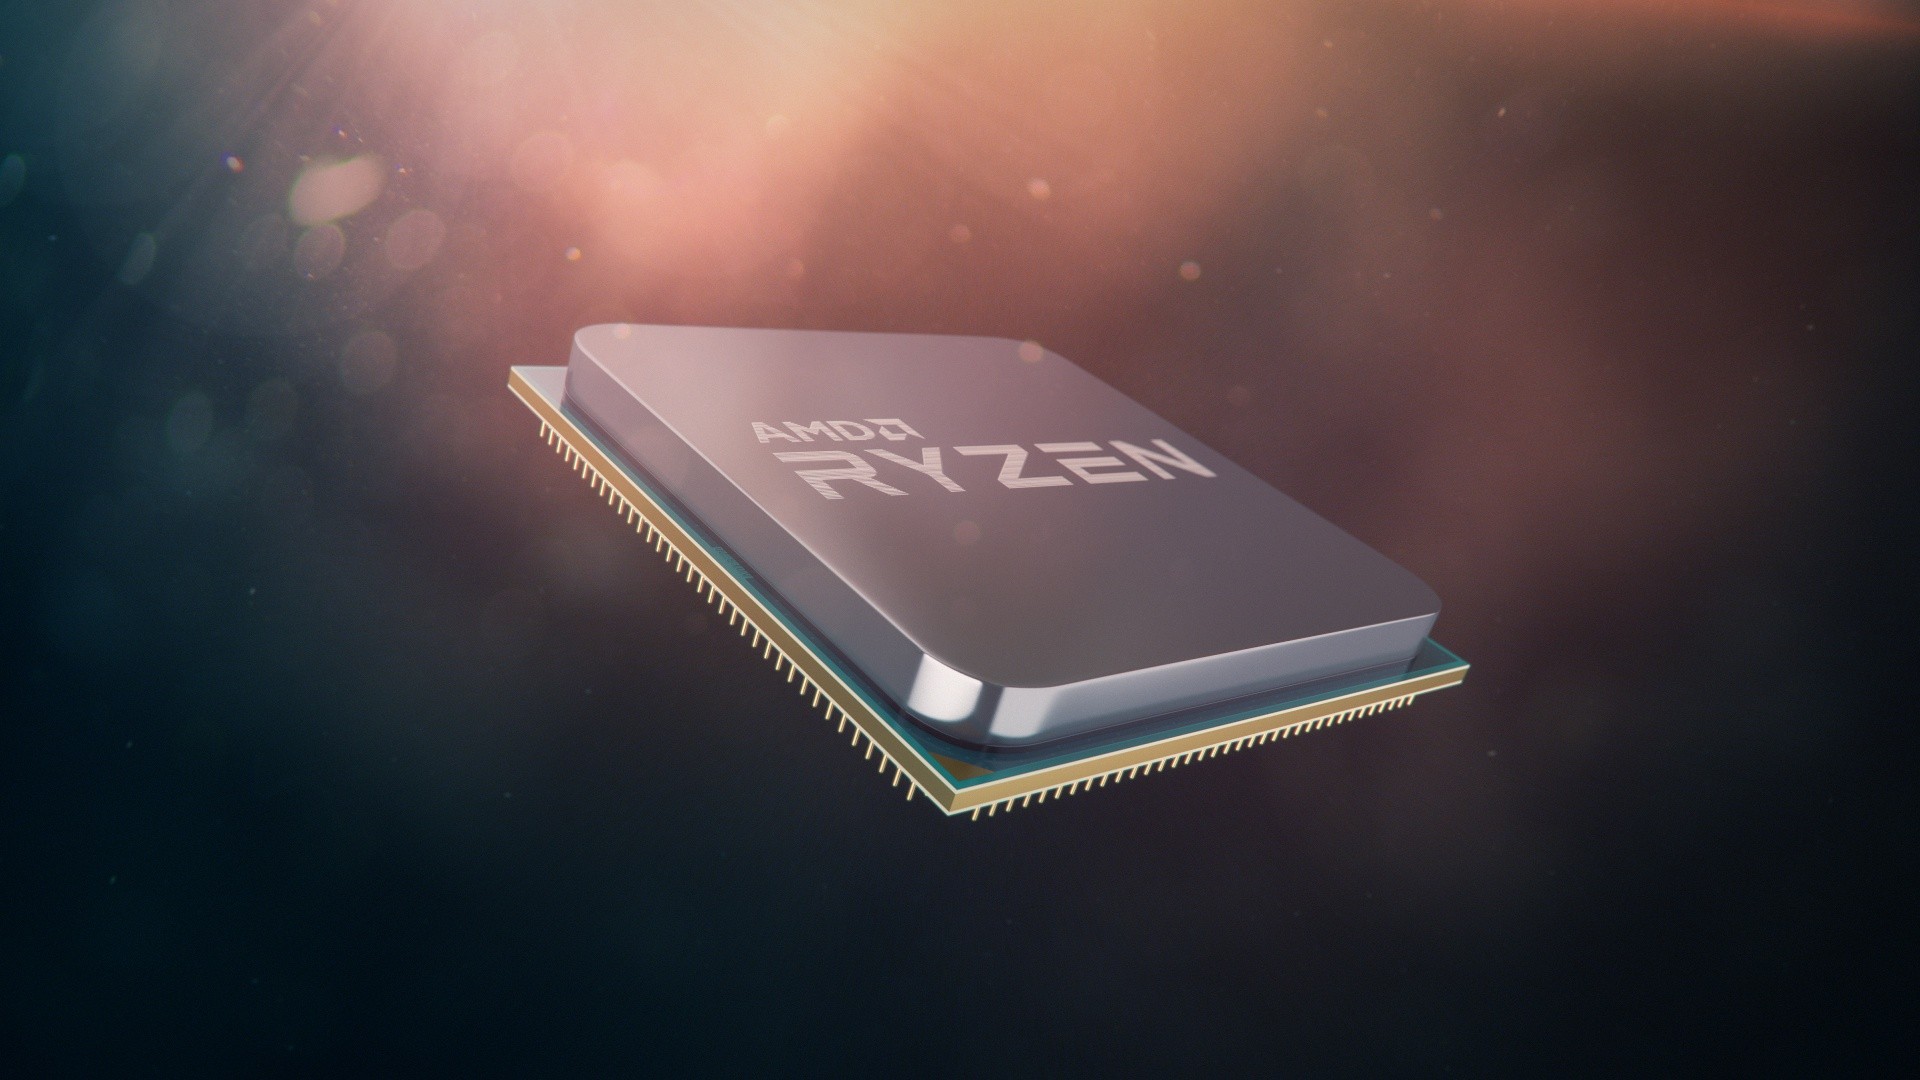 Modele i ceny AMD Ryzen 3000 w przecieku